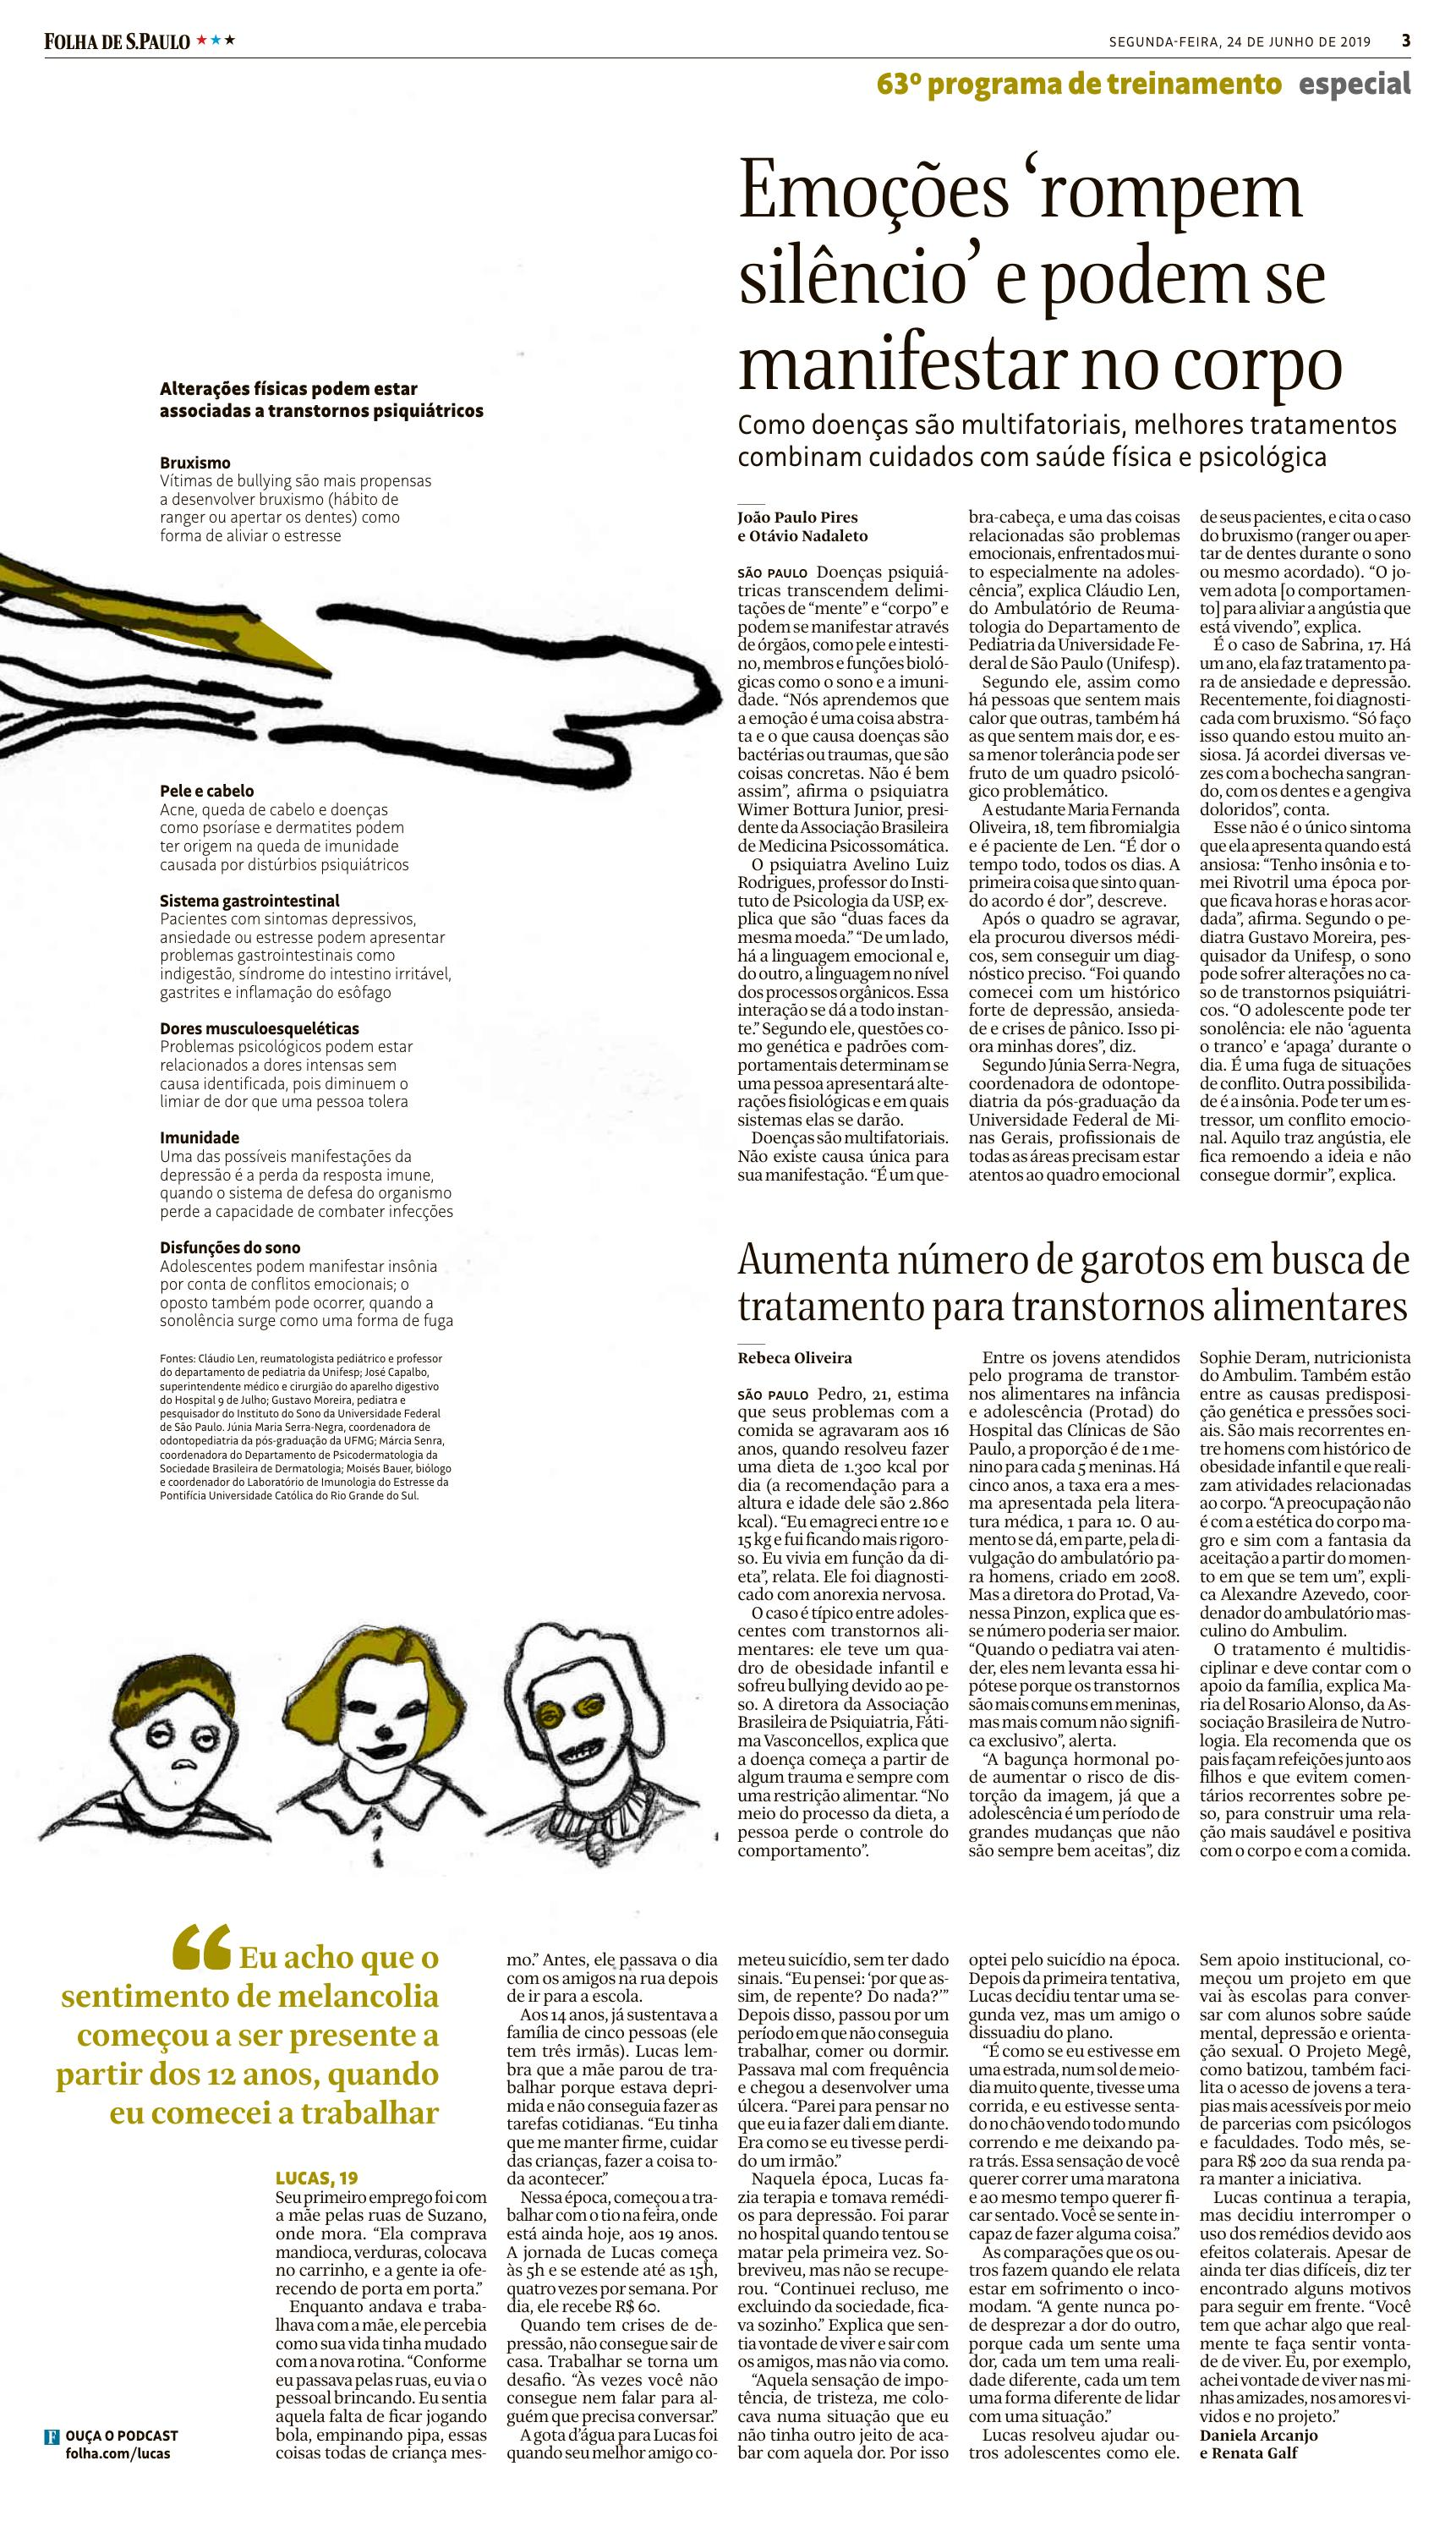 Médica nutróloga da ABRAN fala sobre transtornos alimentares em adolescentes na Folha de S. Paulo